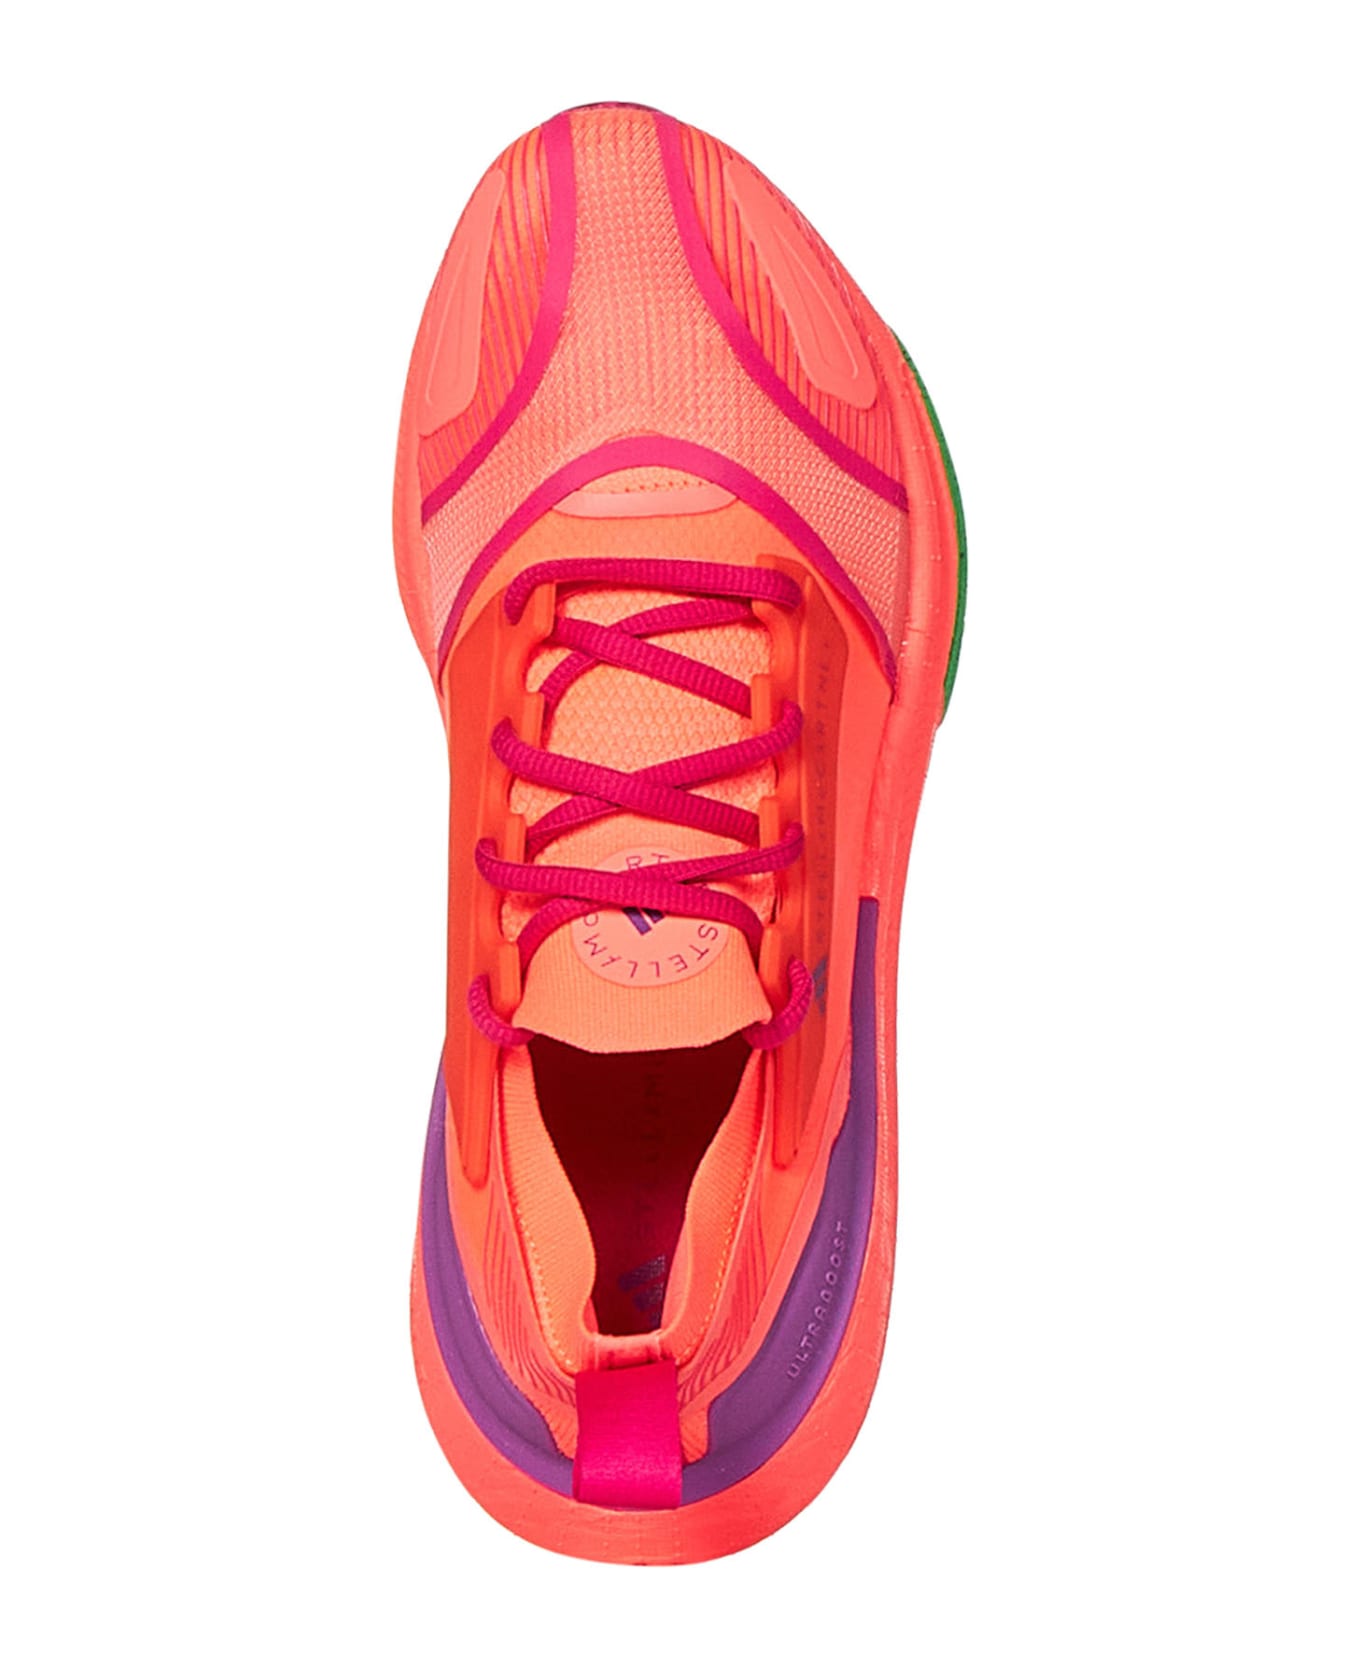 Adidas by Stella McCartney Ultraboost Light Sneakers - Orange